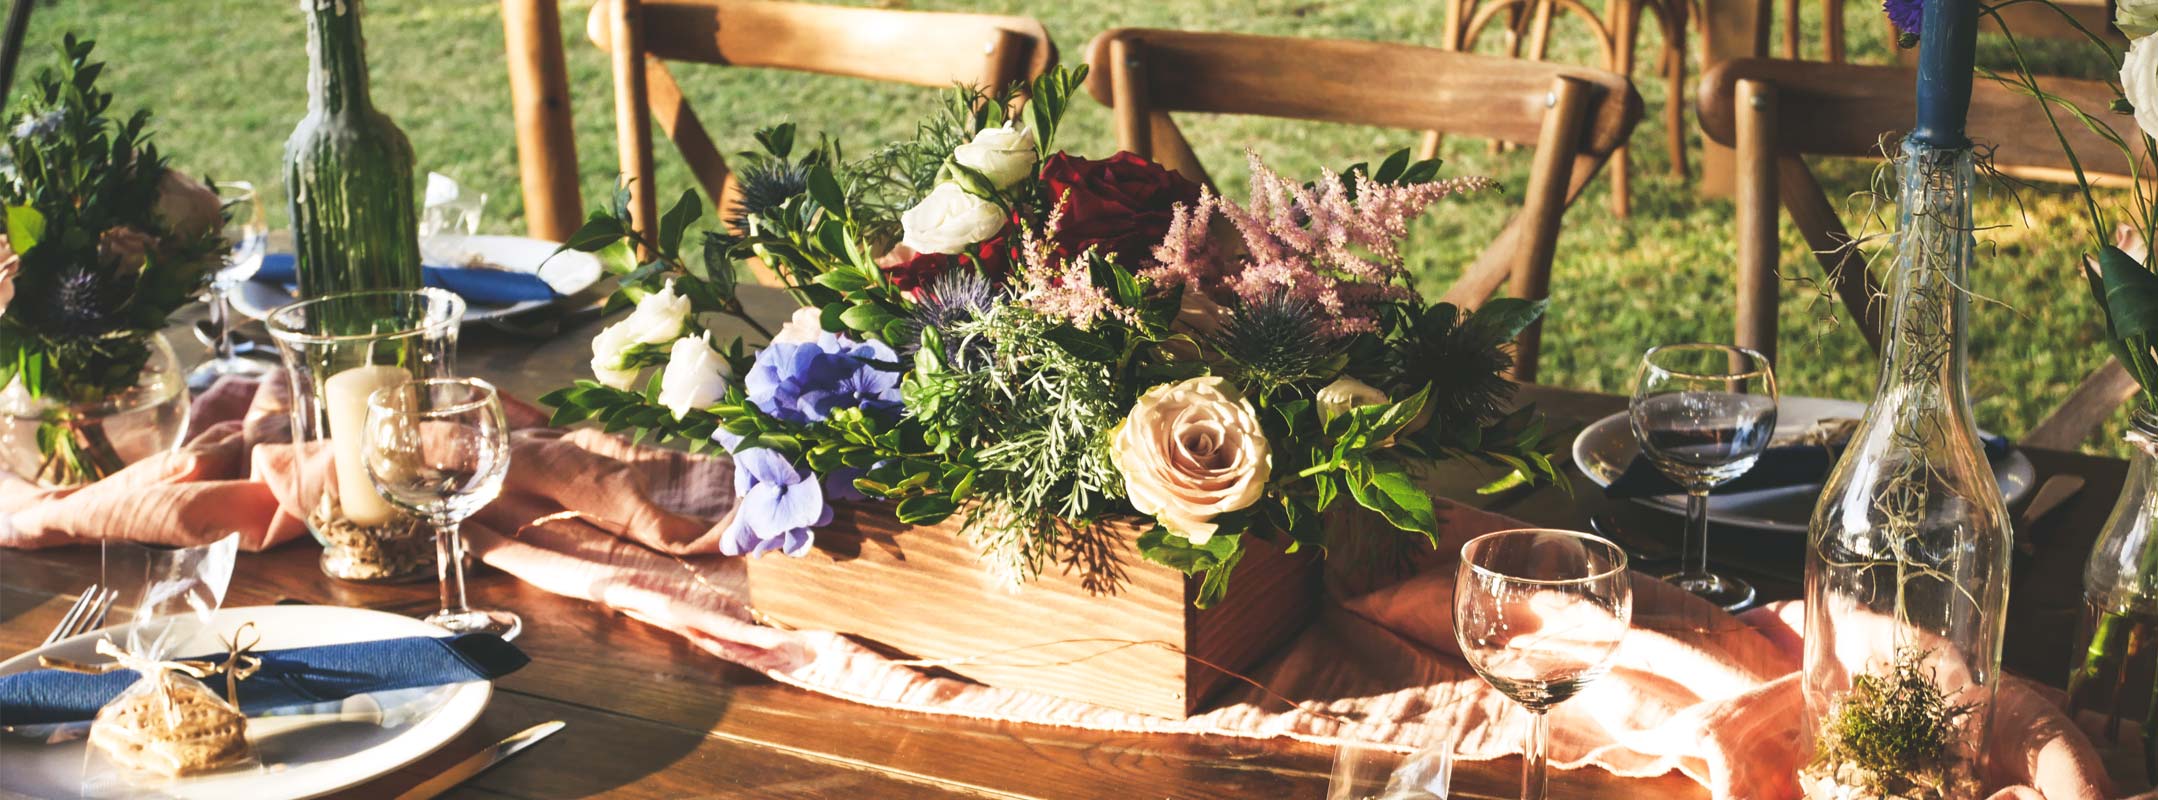 La décoration en salle, table chaises, fleurs, pour un mariage réussi au jardin d'Ama.